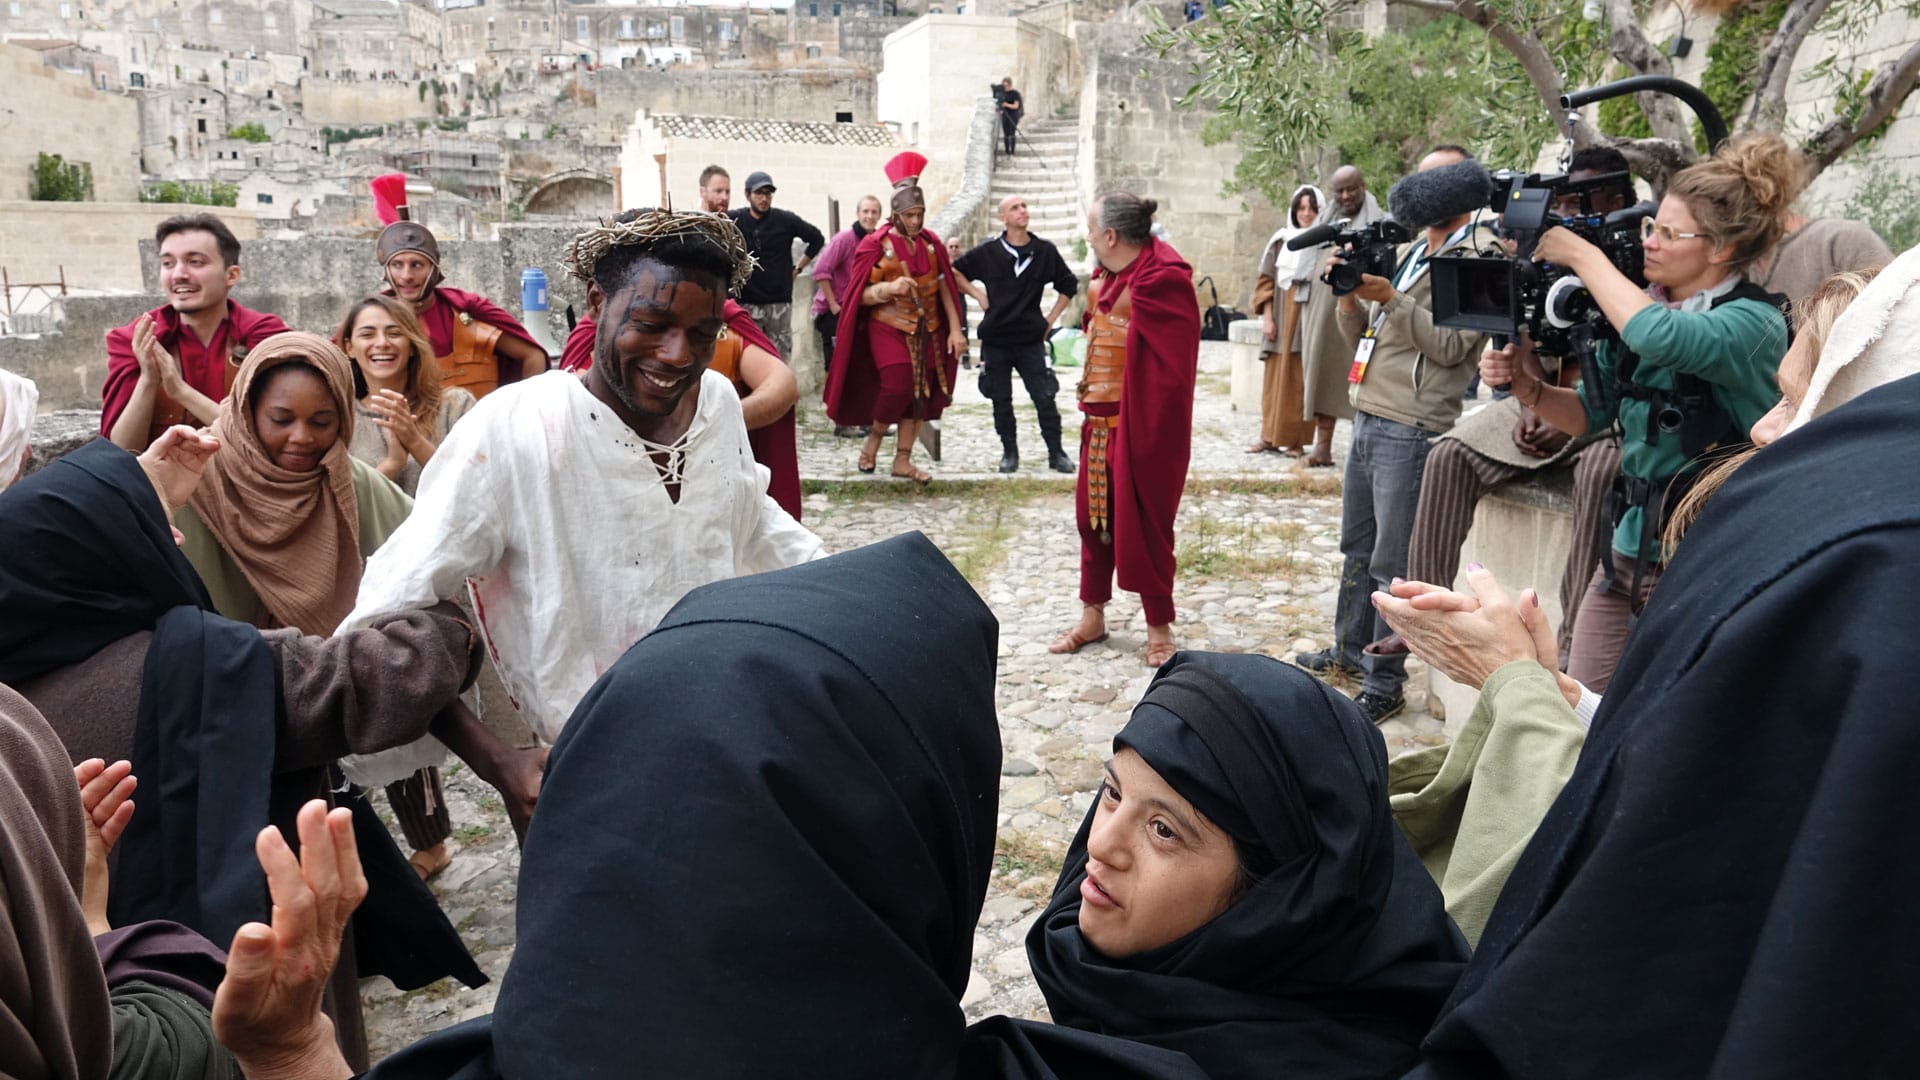 Am Set des Films „Das Neue Evangelium“ im italienischen Matera: Jesus wird von einem Farbigen gespielt